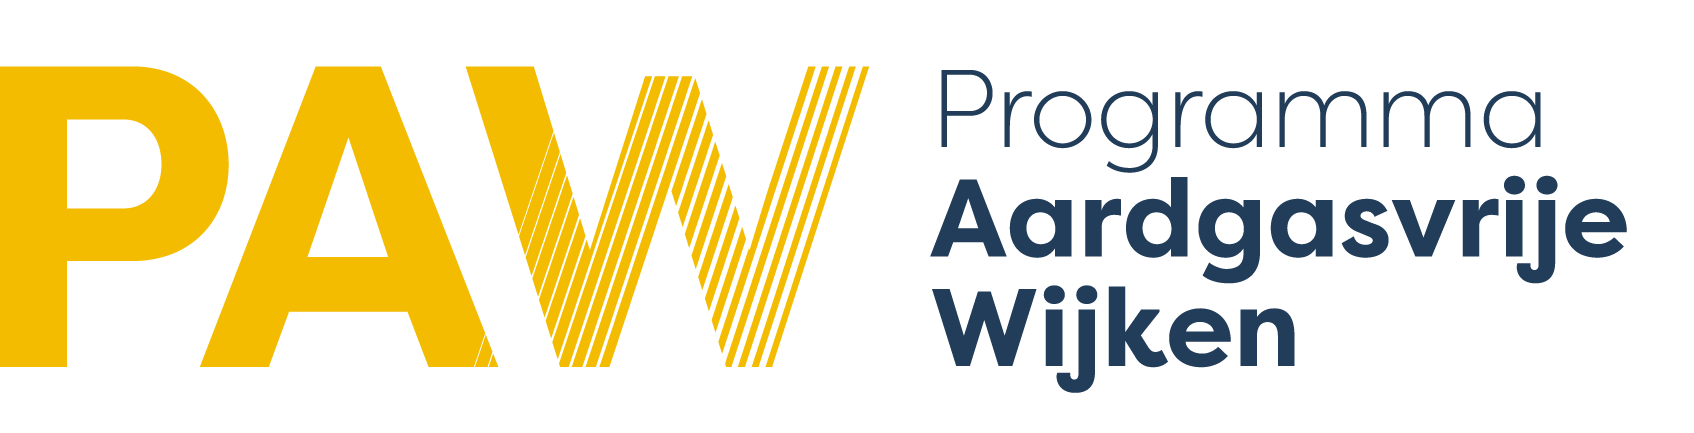 Programma Aardgasvrije Wijken logo